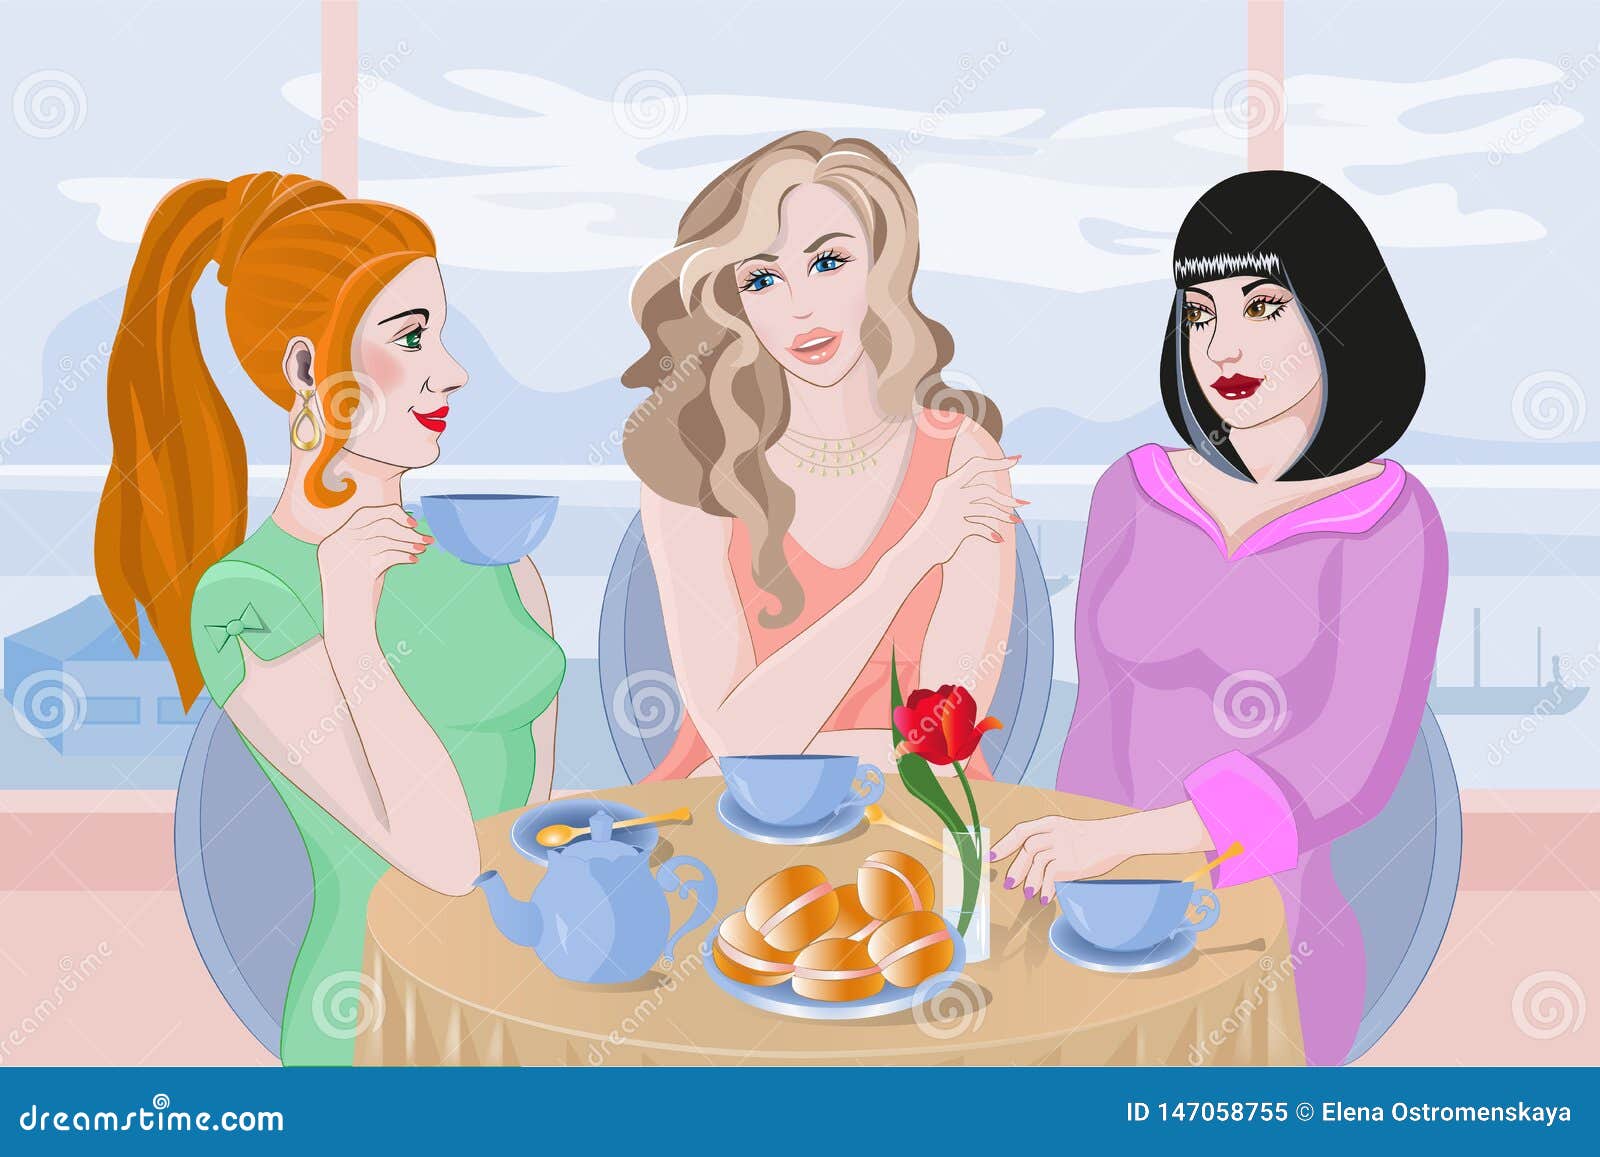 Еду сестру маму. Чаепитие с подружками. Три девушки за столом. Три подружки в кафе. Иллюстрации подружки в кафе.